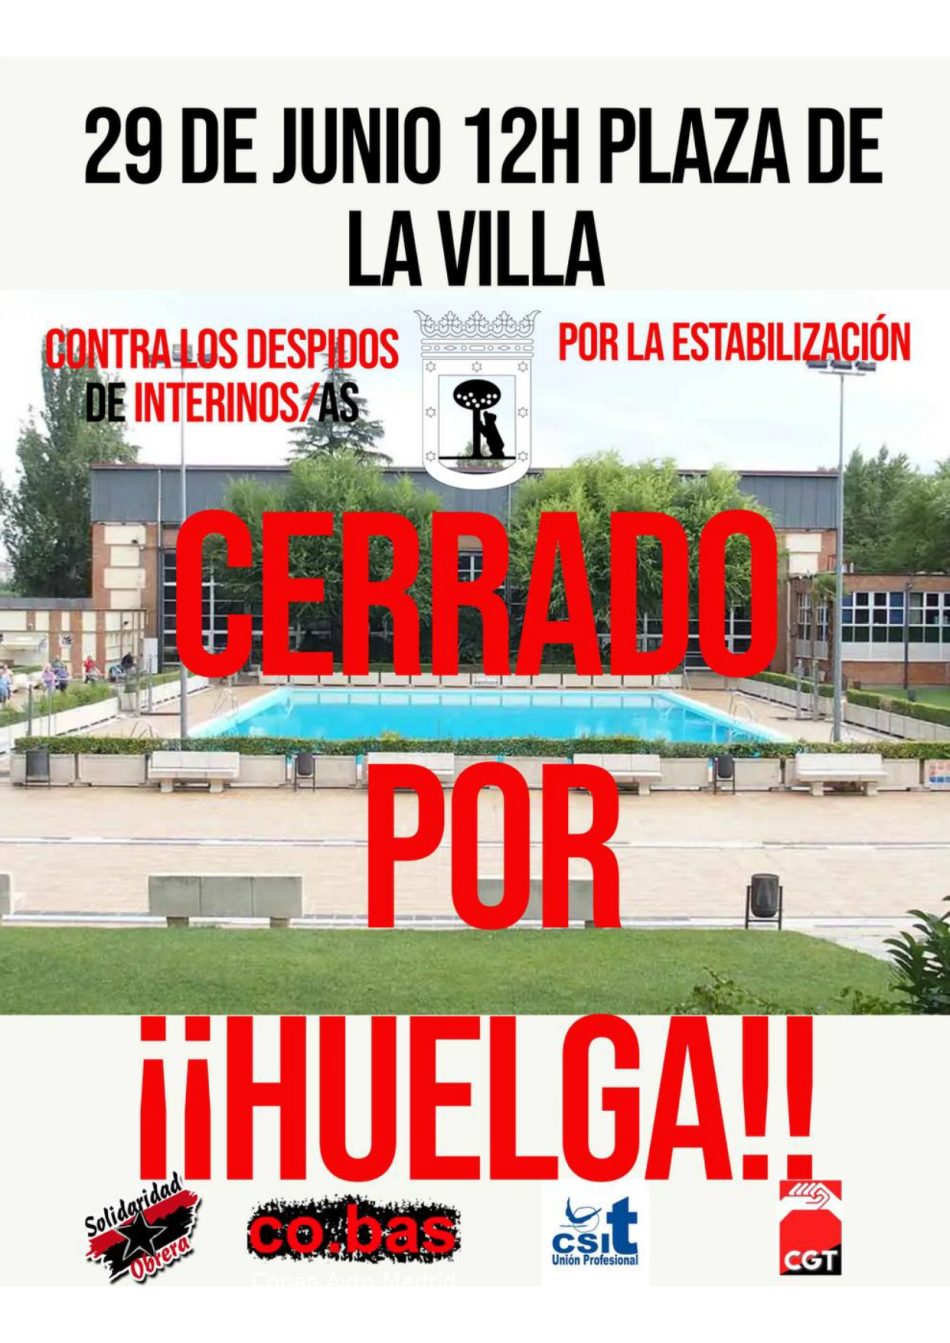 Ante los despidos masivos, convocan dos jornadas de huelga en las piscinas municipales de Madrid: 29 de junio y 2 de julio